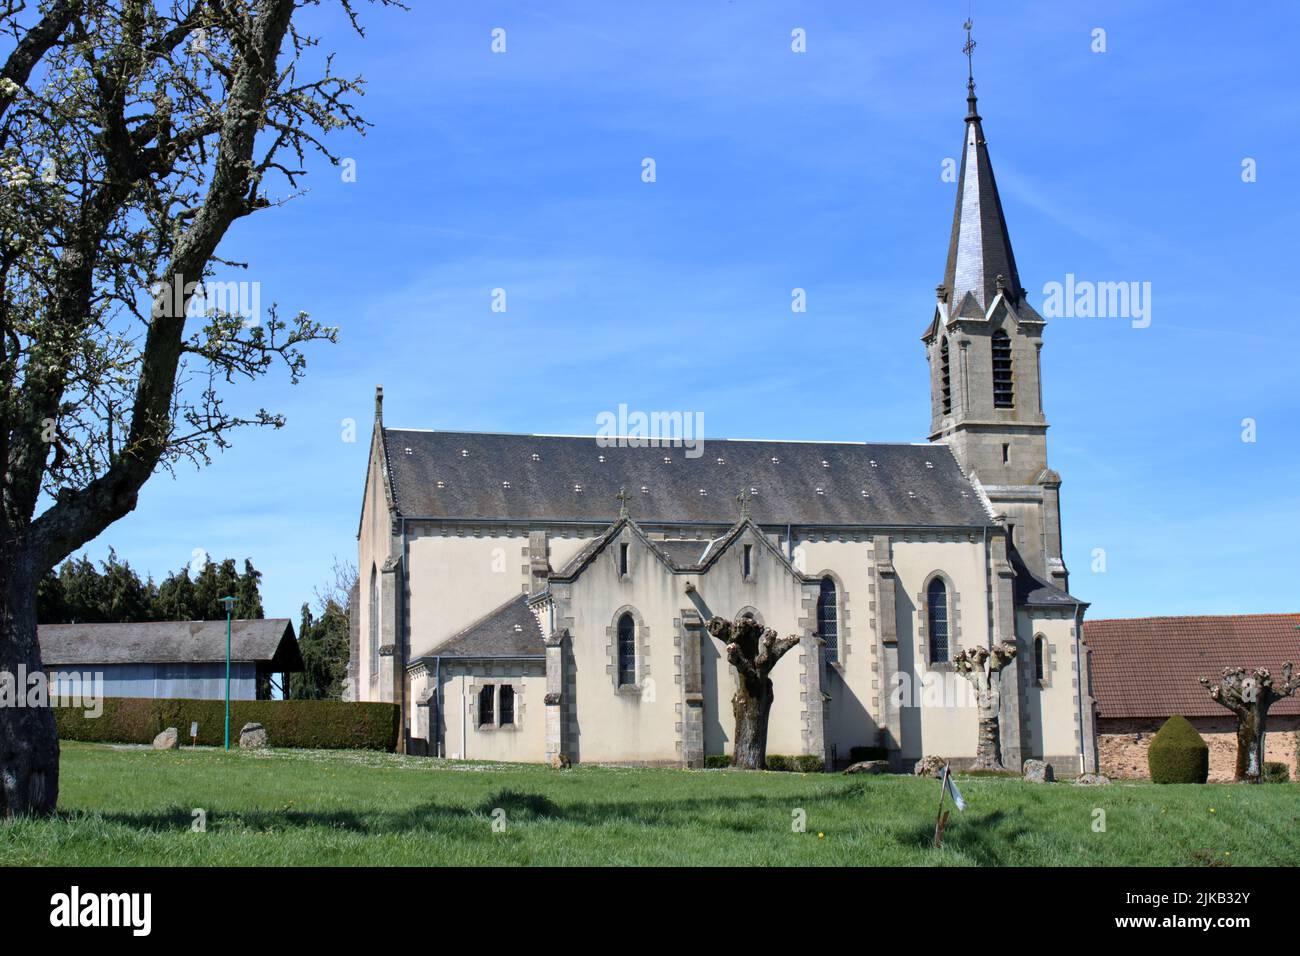 La belle église de Sazeray une ville située dans la région de la Creuse dans le centre rural de la France. Banque D'Images